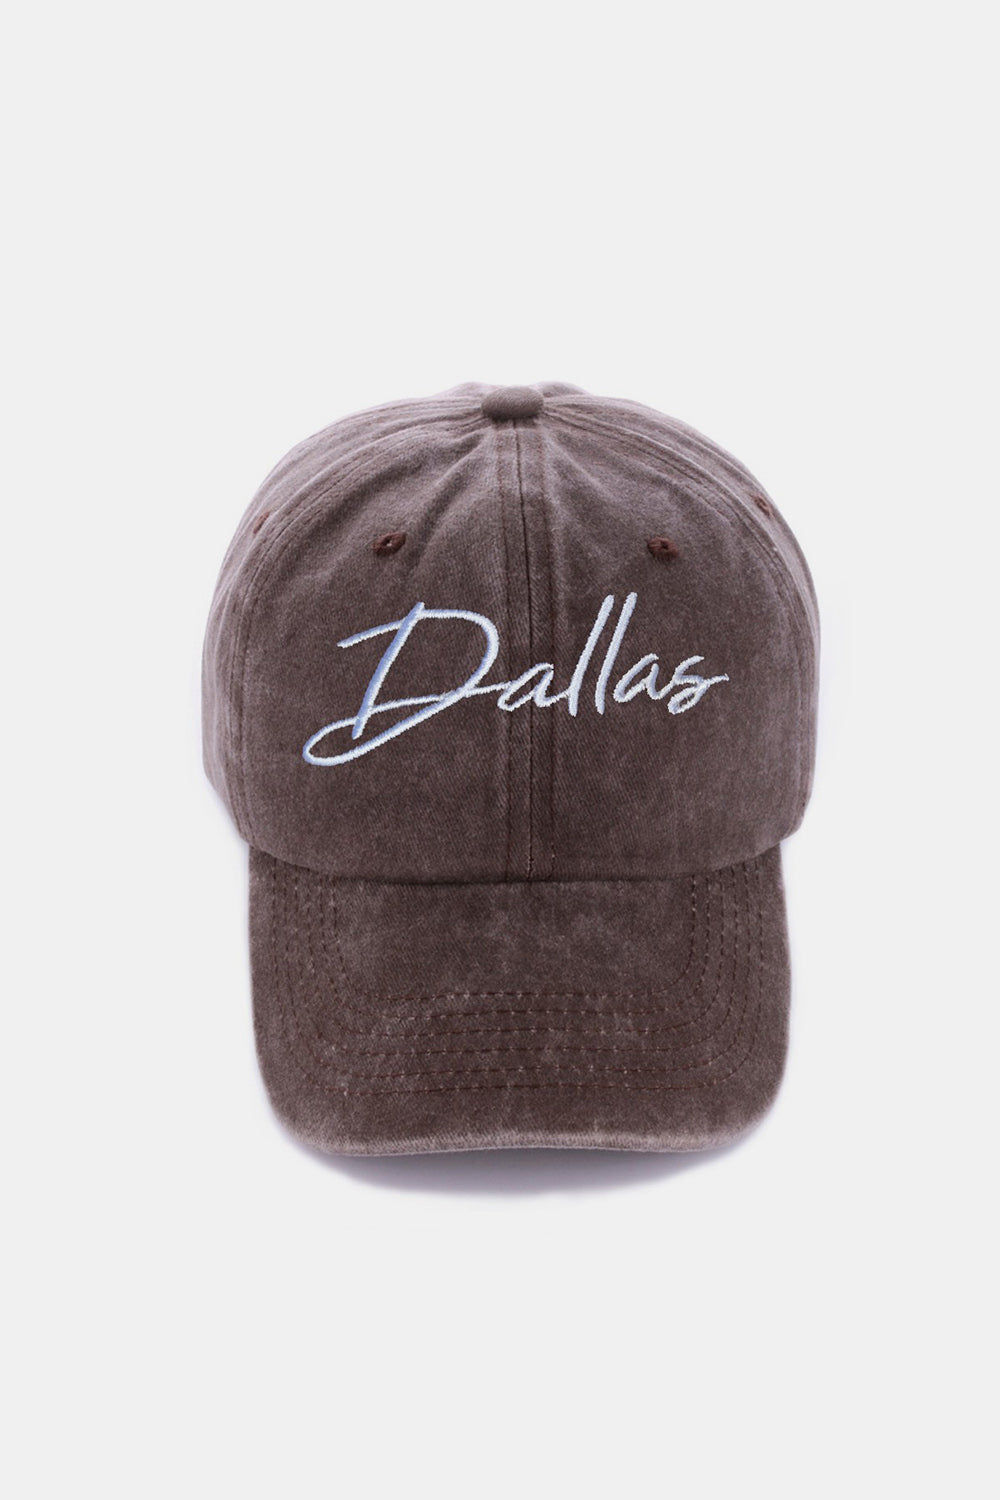 DALLAS Embroidered Baseball Cap